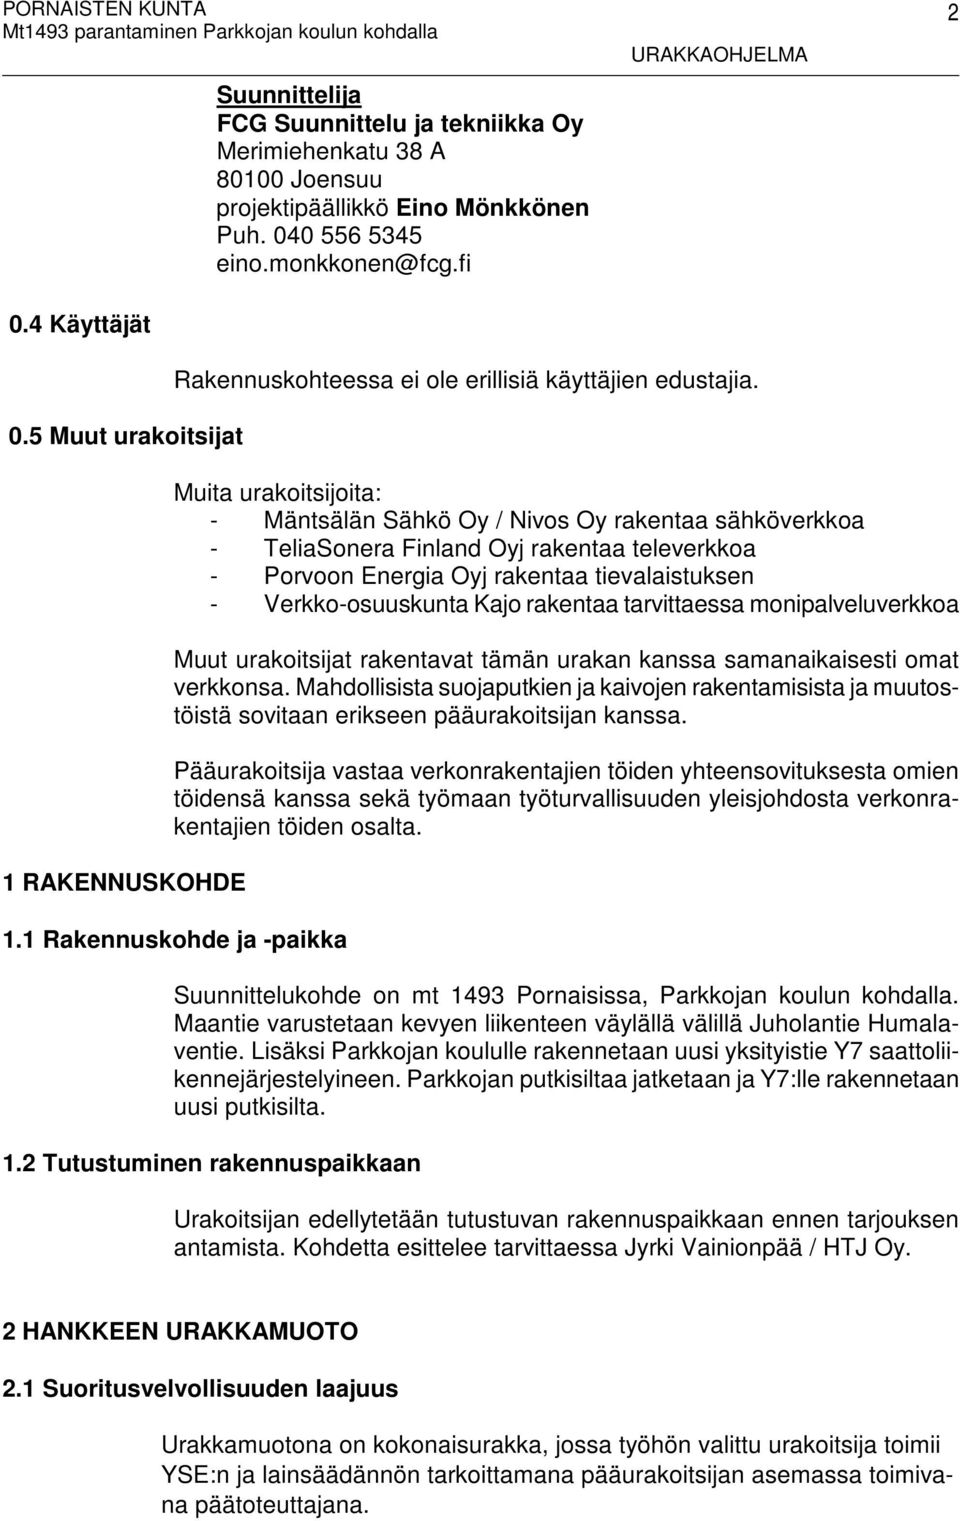 Muita urakoitsijoita: - Mäntsälän Sähkö Oy / Nivos Oy rakentaa sähköverkkoa - TeliaSonera Finland Oyj rakentaa televerkkoa - Porvoon Energia Oyj rakentaa tievalaistuksen - Verkko-osuuskunta Kajo